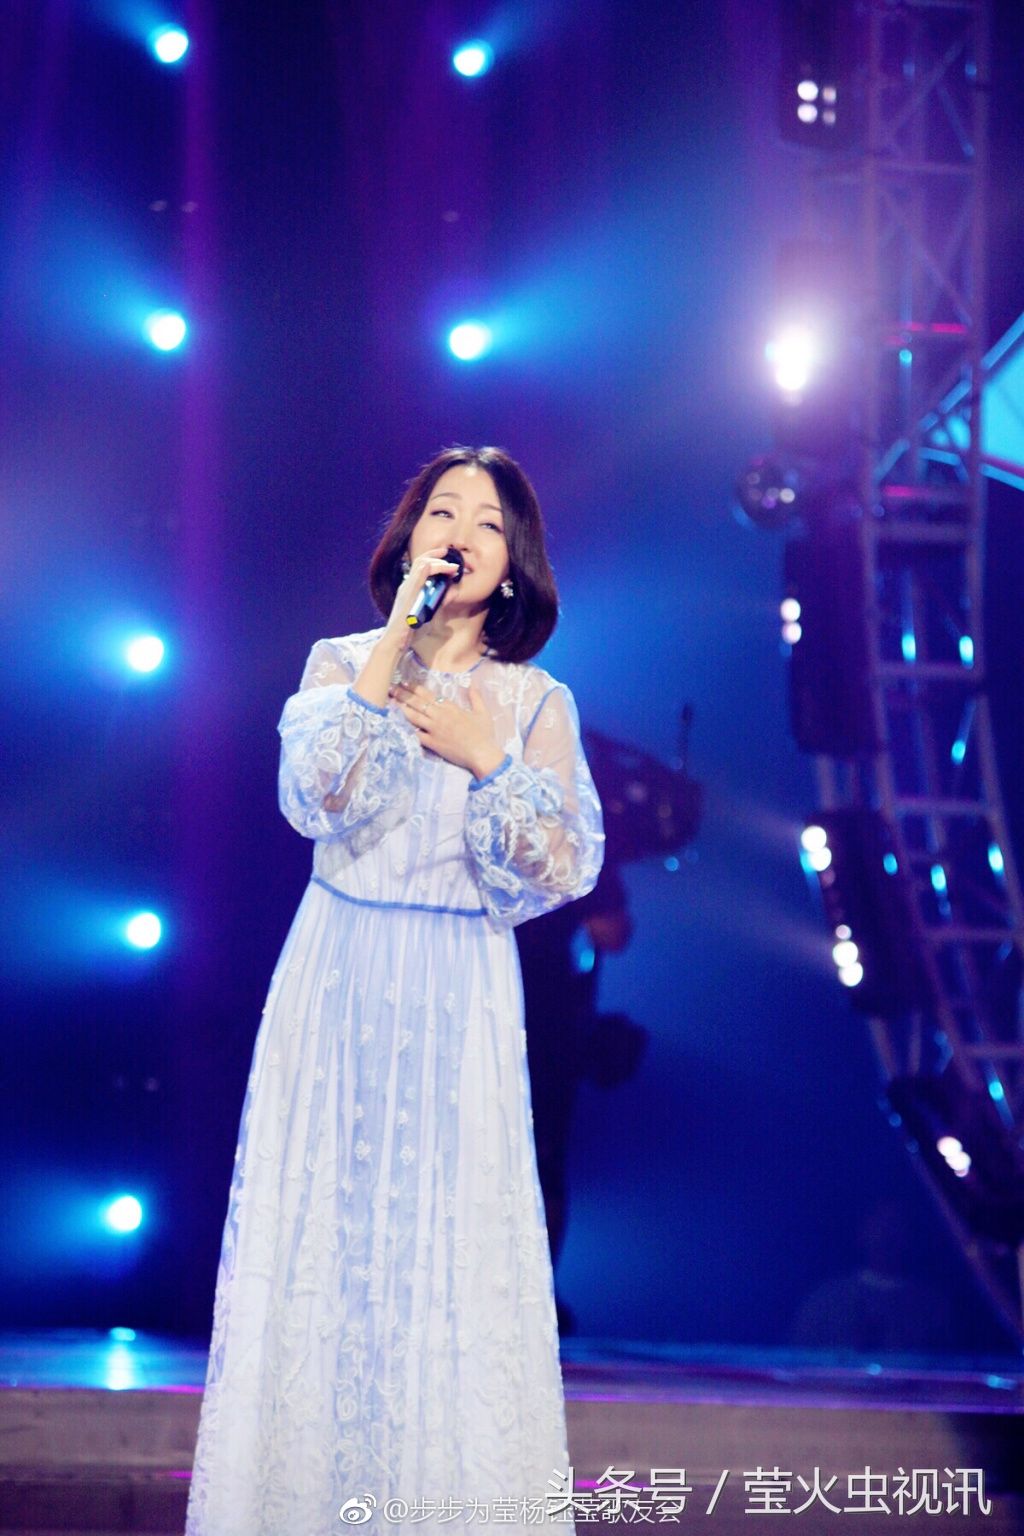 杨钰莹参加粤语歌曲竞赛节目,她是唯一非粤语